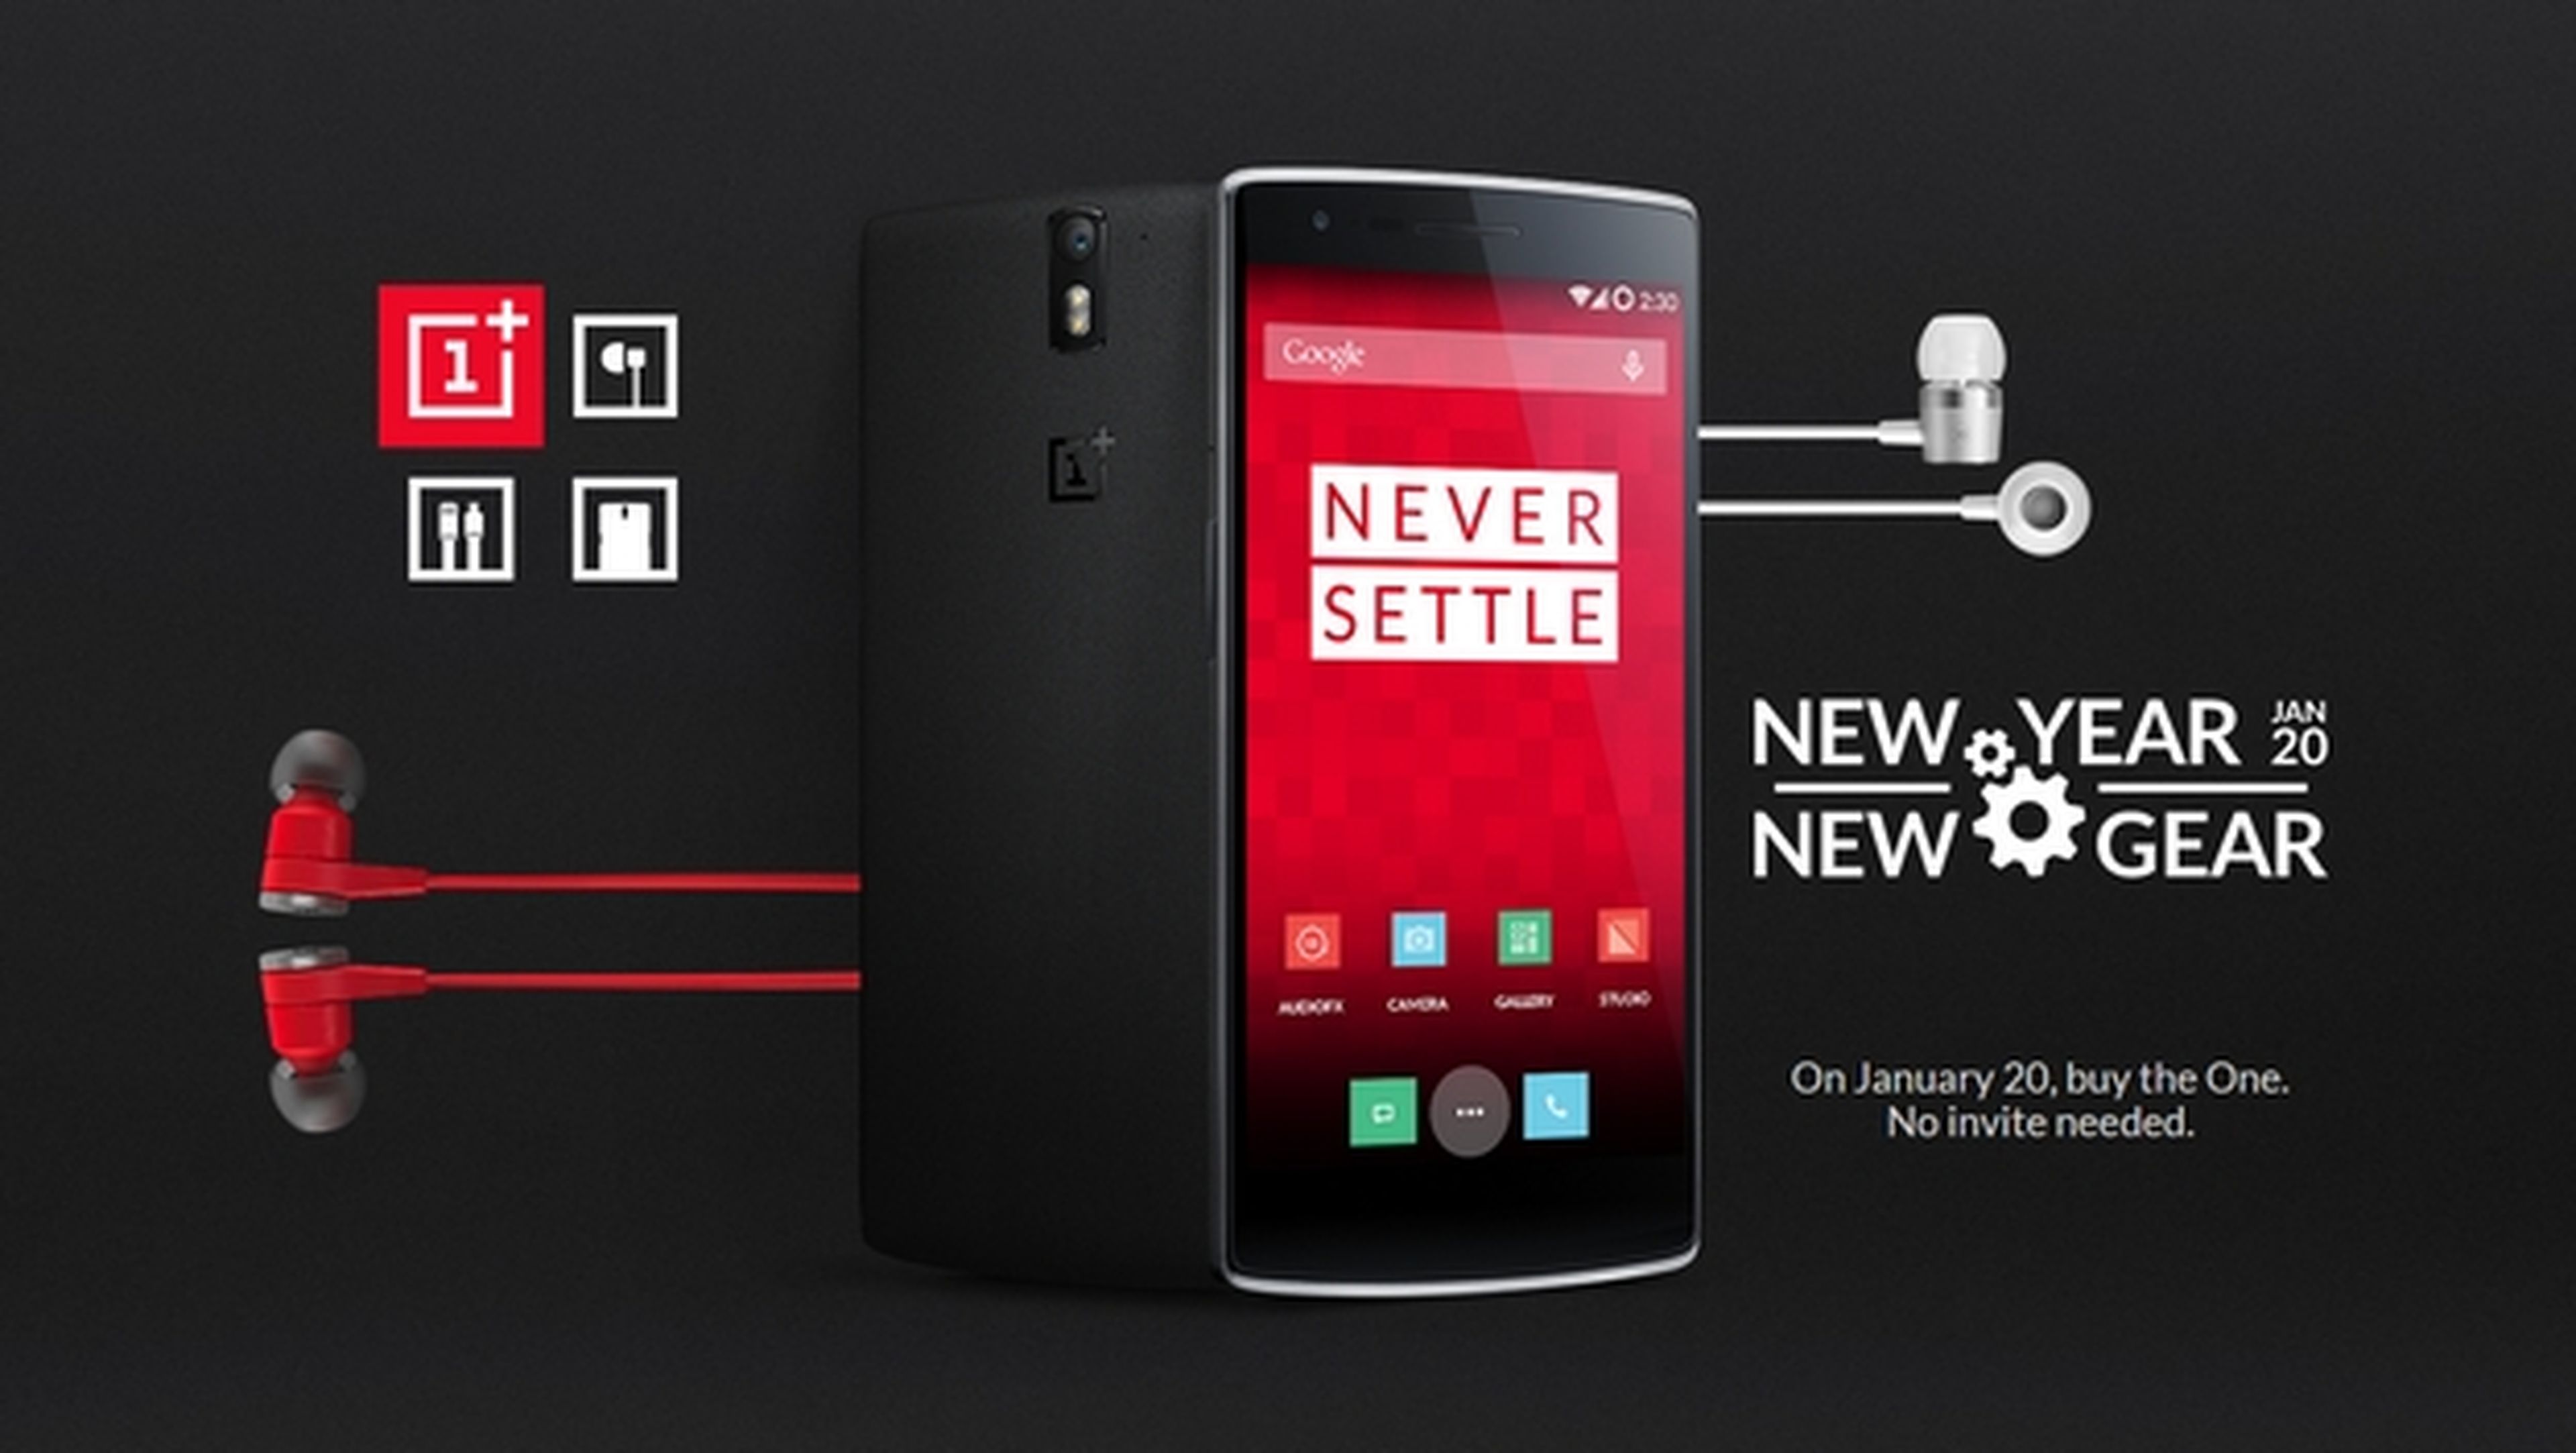 Podrás comprar un OnePlus One el 20 de enero sin invitación.